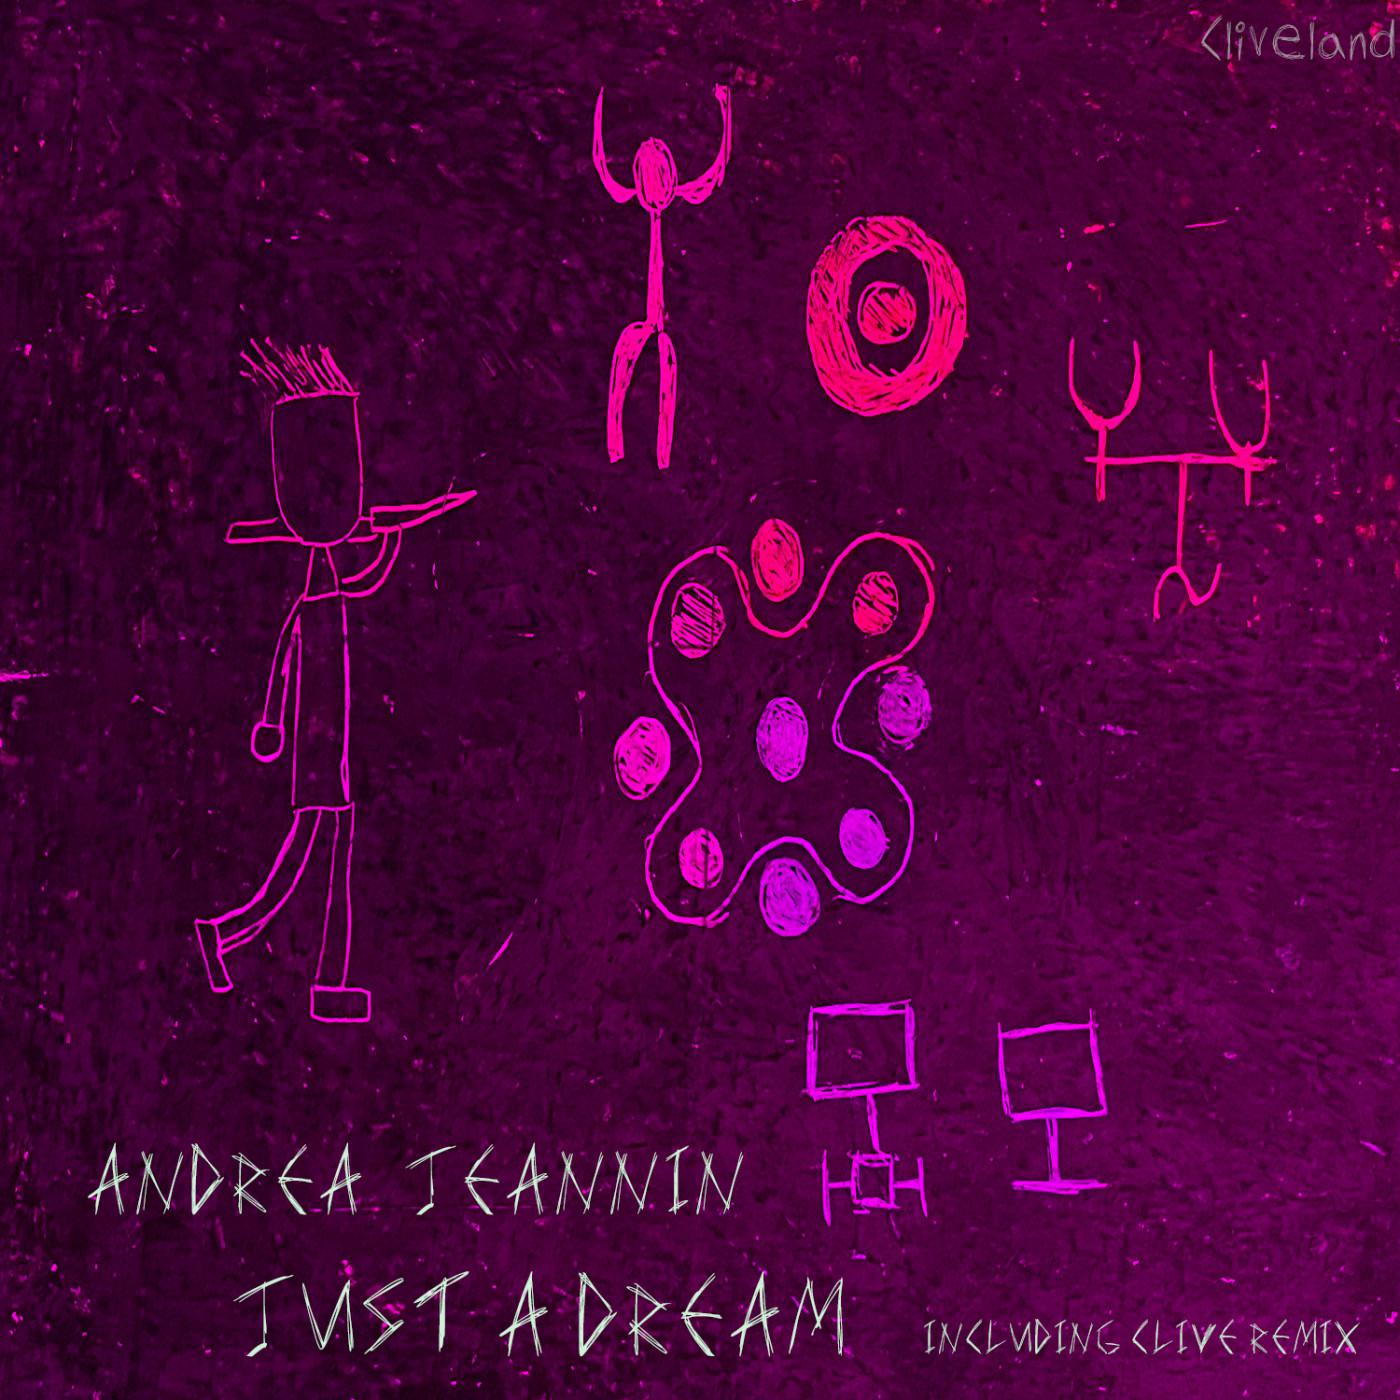 Andrea Jeannin - Just A Dream (Original Mix)